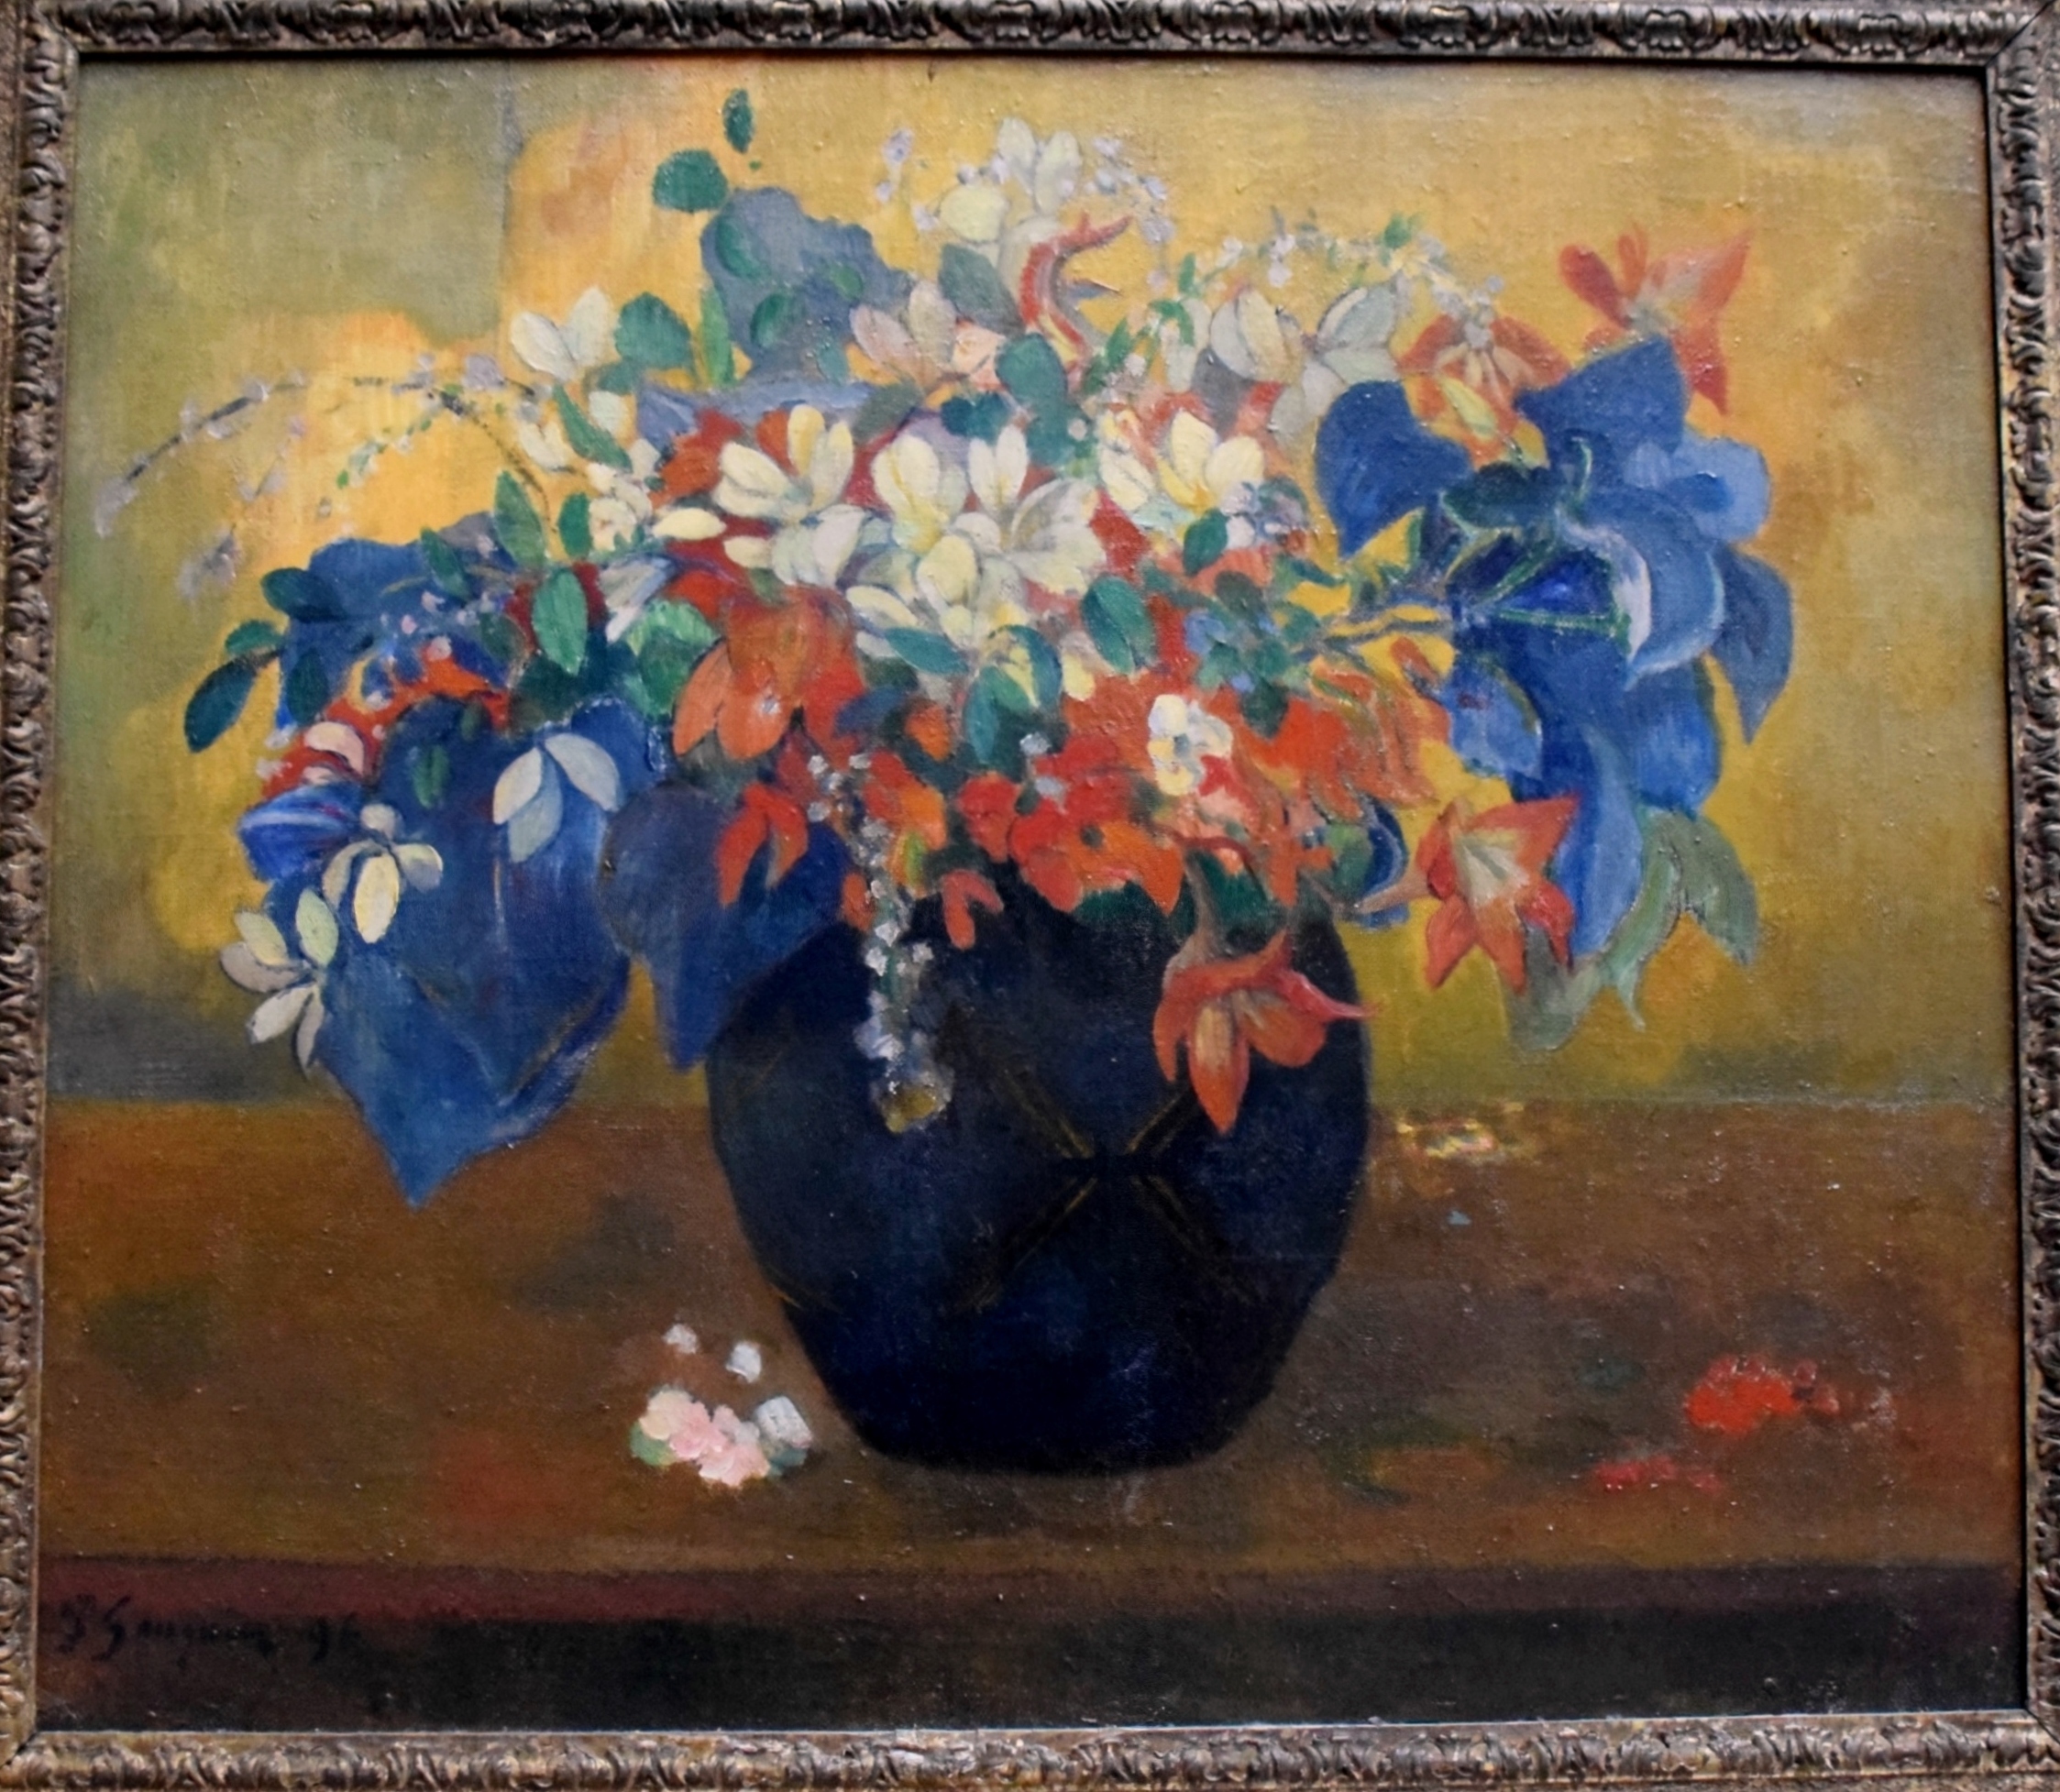 National Gallery - Paul Gauguin "Vase of Flowers"...